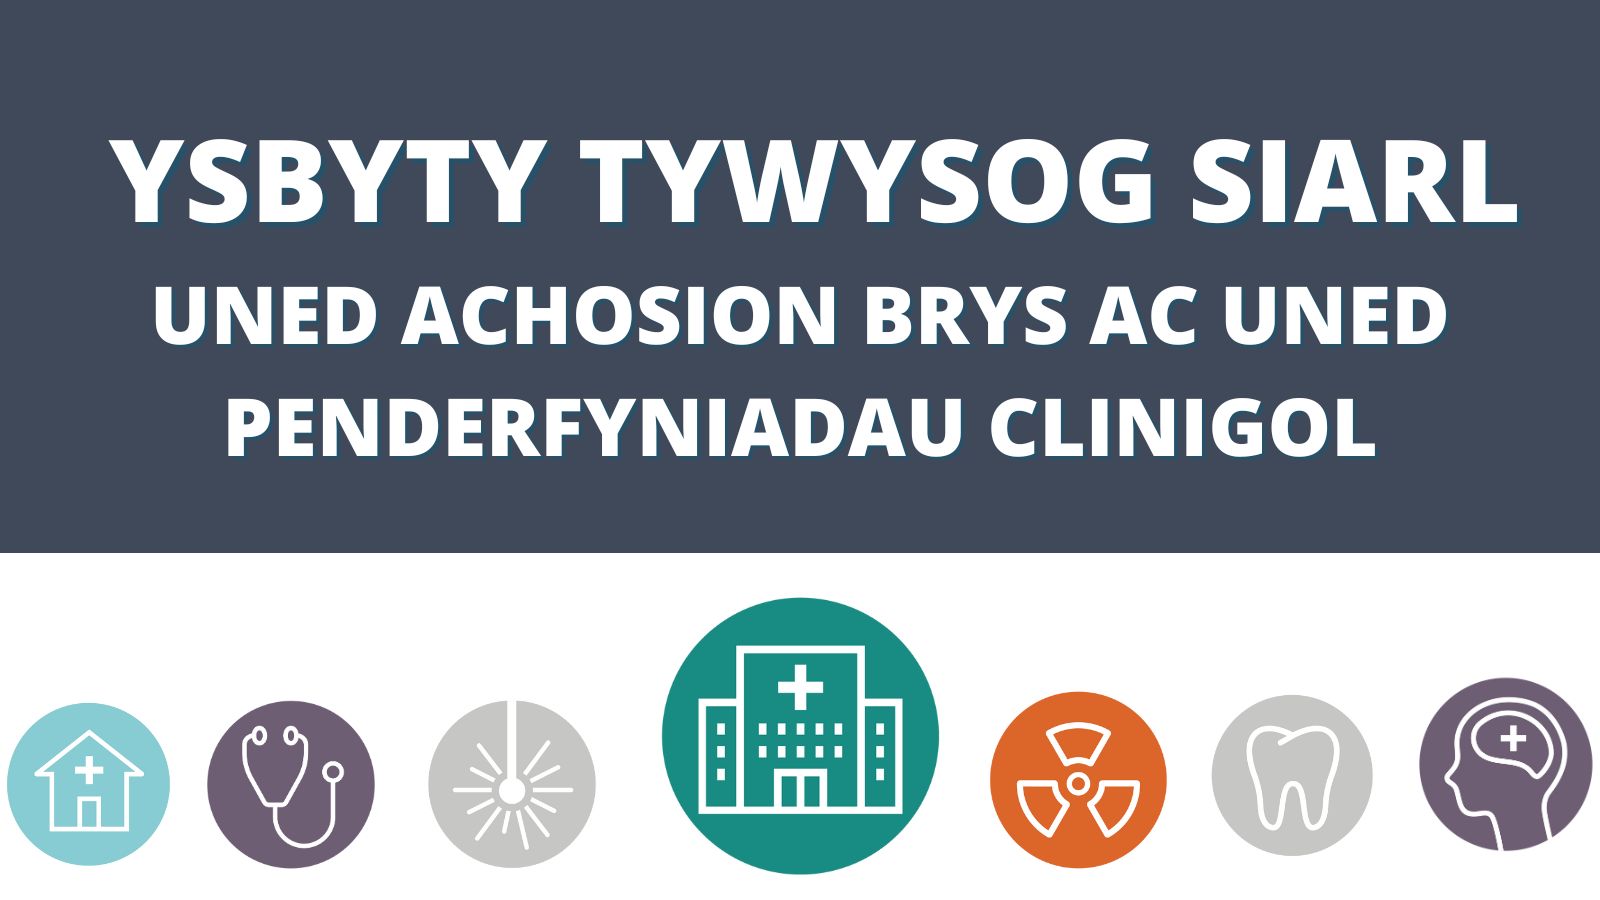 Ysbyty Tywysog Siarl Uned Achosion Brys ac Uned Penderfyniadau Clinigol